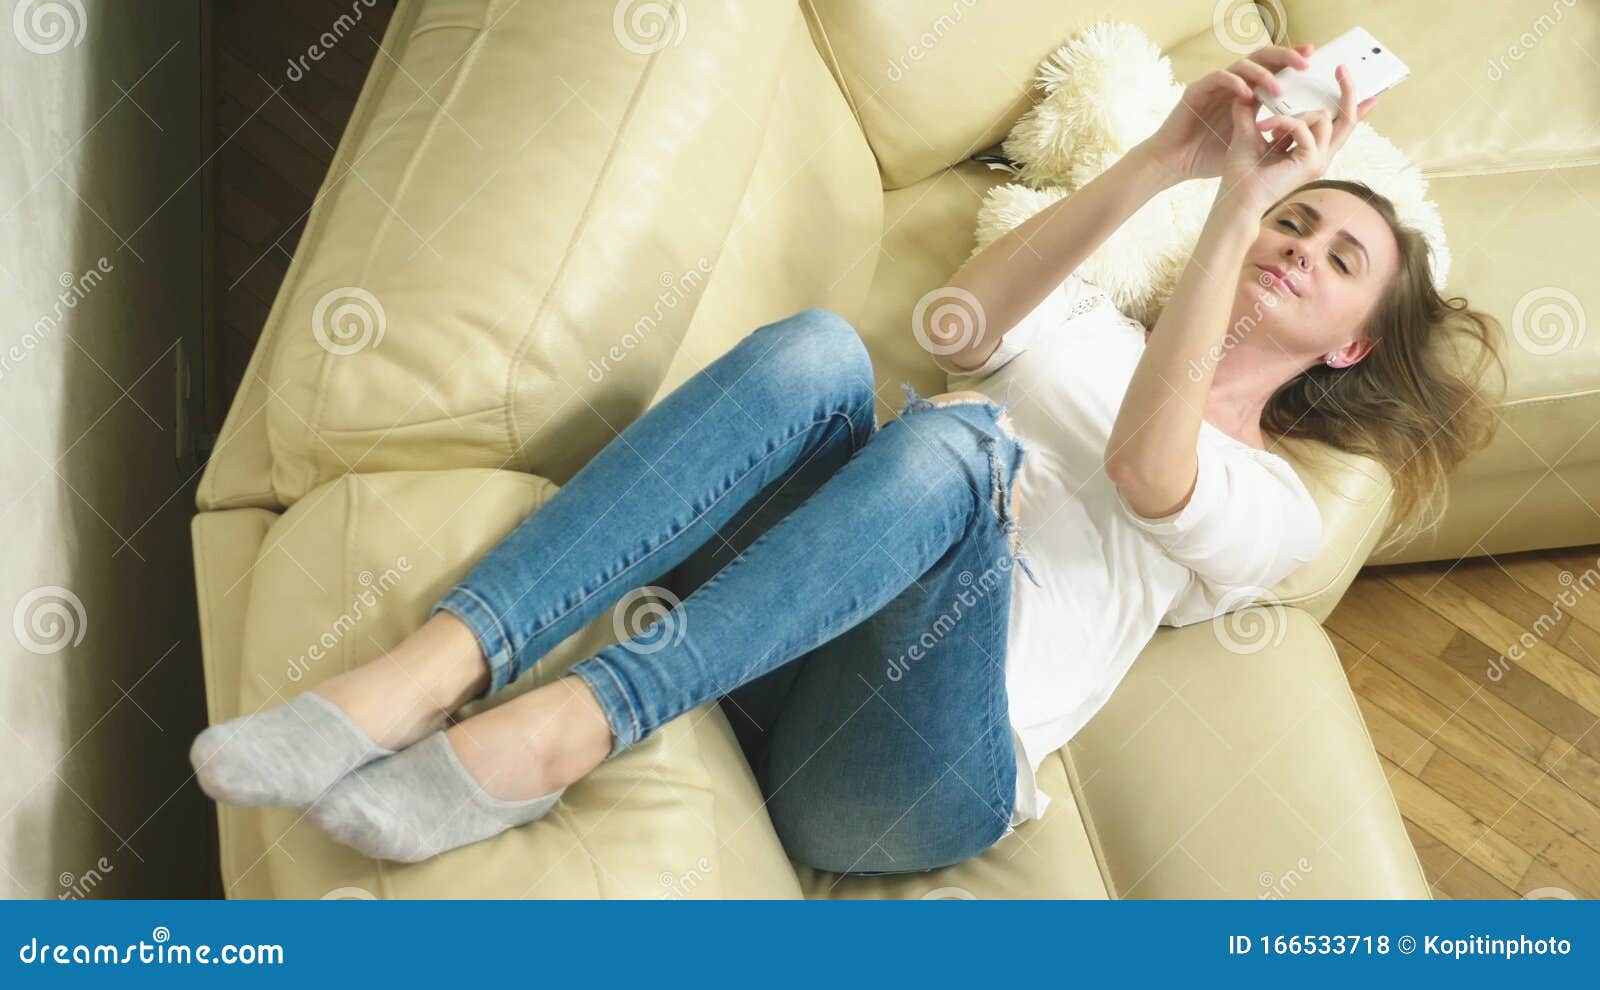 性格开朗的人放松在沙发上放松图片下载 - 觅知网